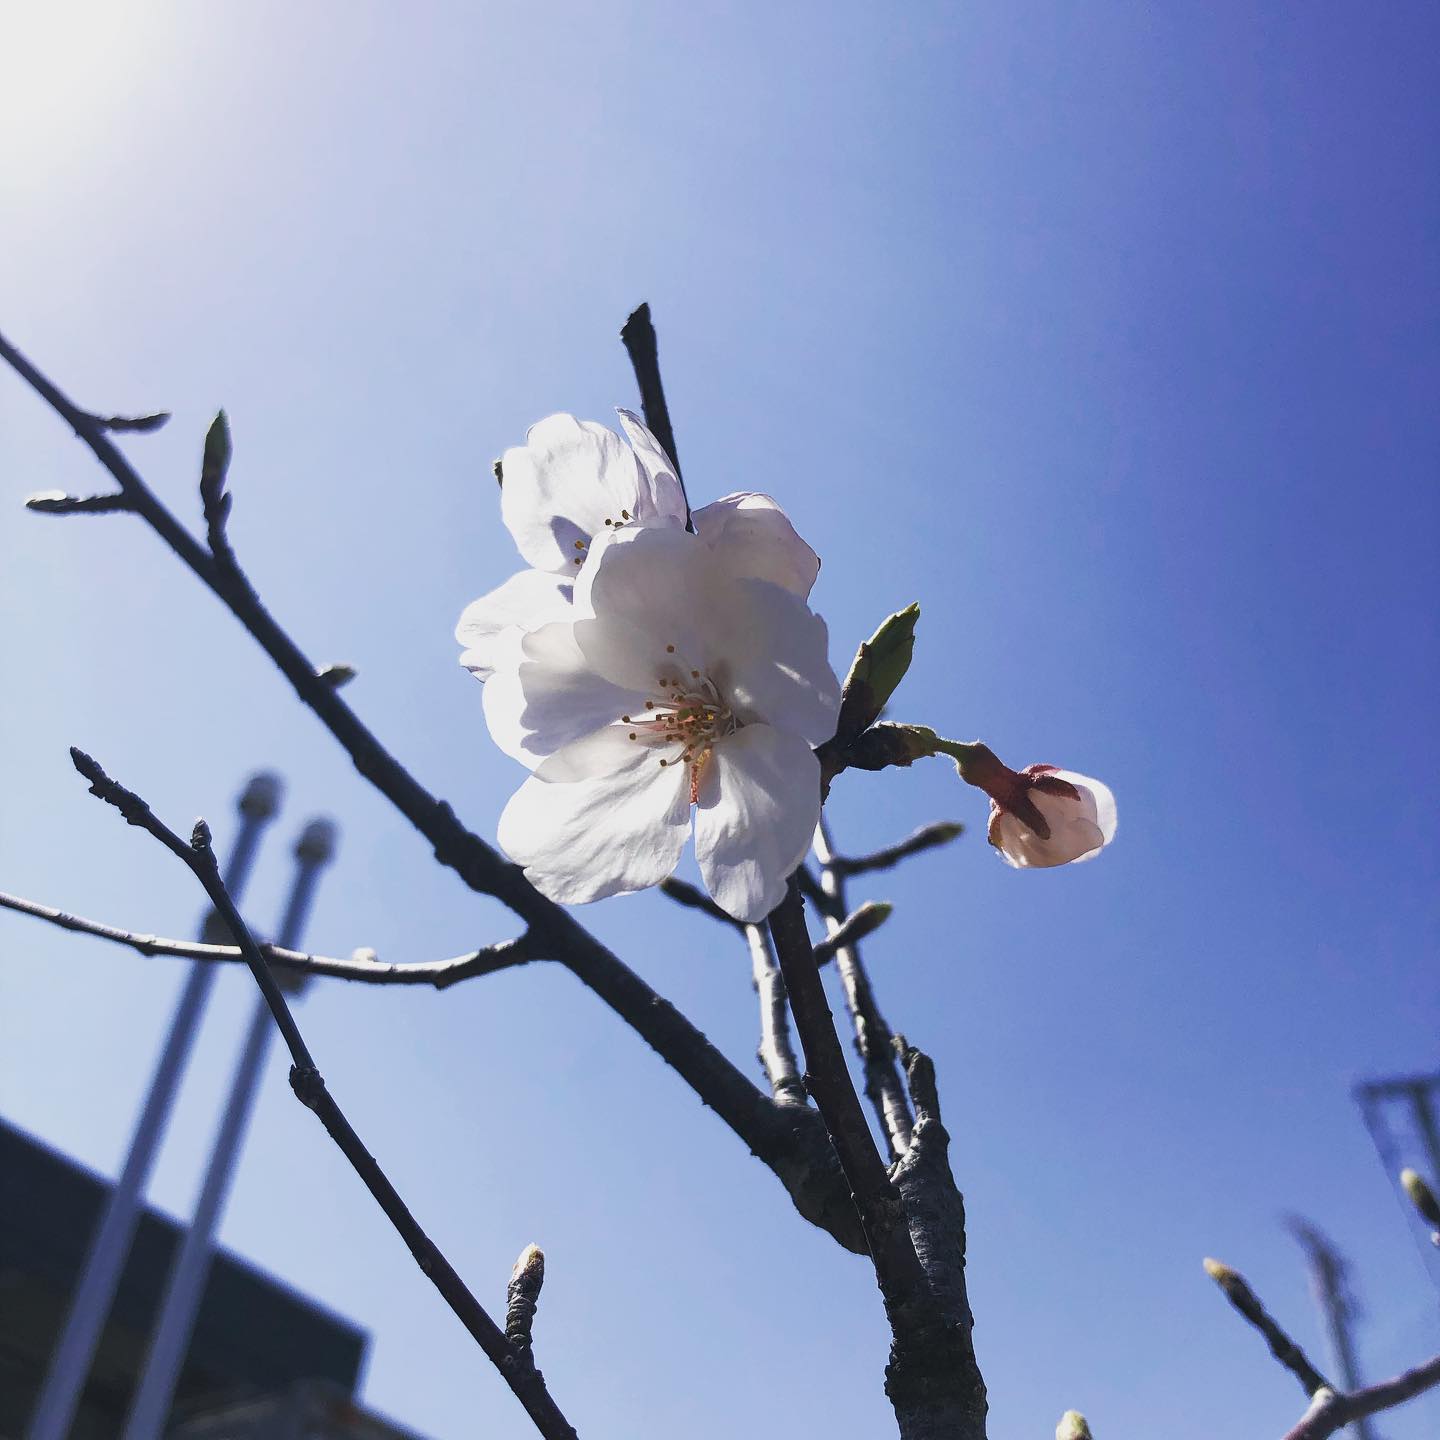 うちにも春が。桜の成長、、の前に人が成長する仕組みが出来ているか。。うーん、桜もうちもこれからだ。ワクワク。